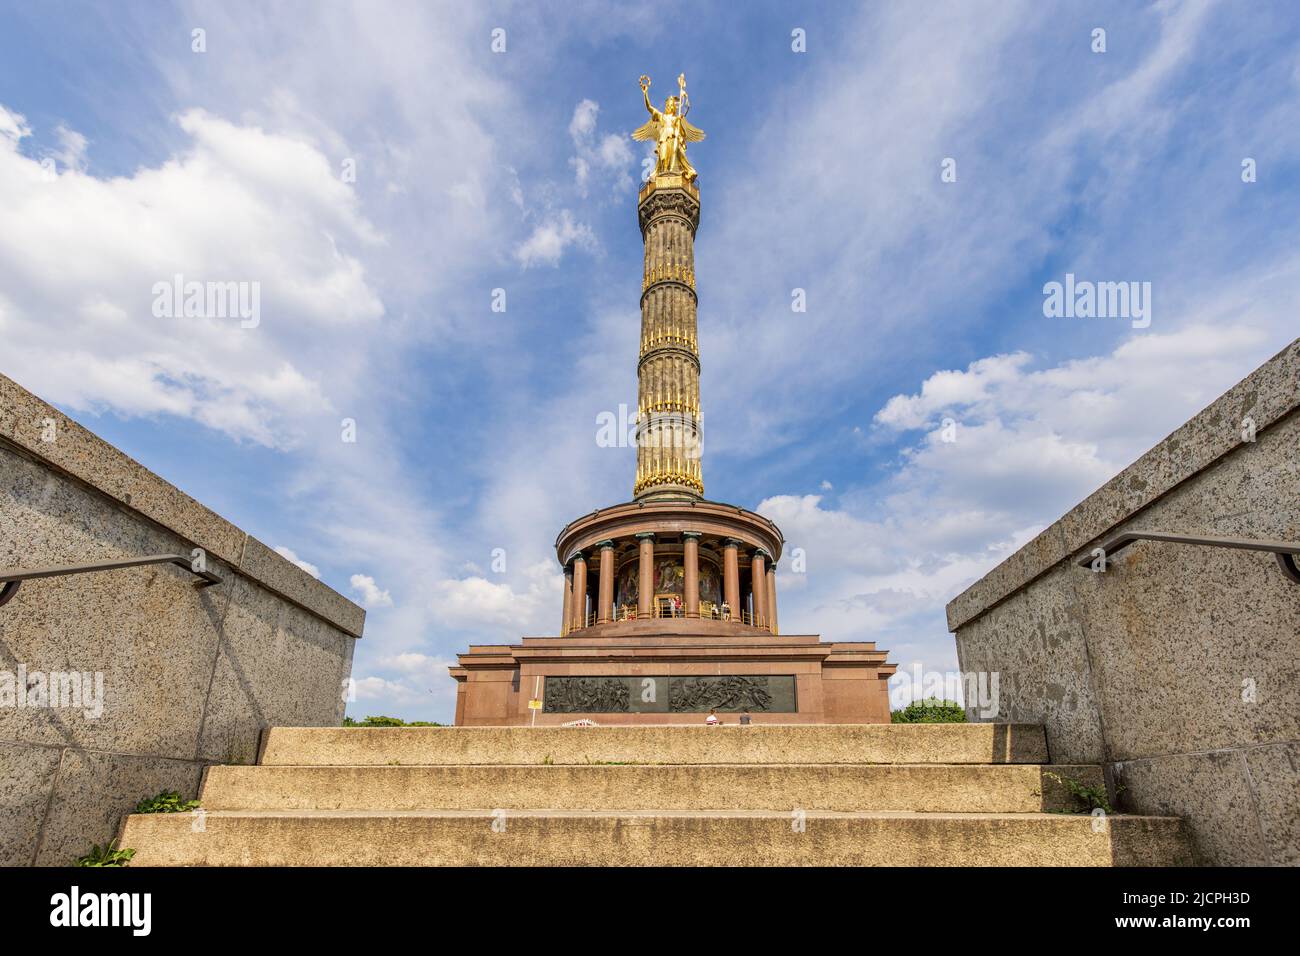 The magnificent Siegessäule (Victory Column) by Friedrich Darke in Tiergarten park, Berlin, Germany. Stock Photo